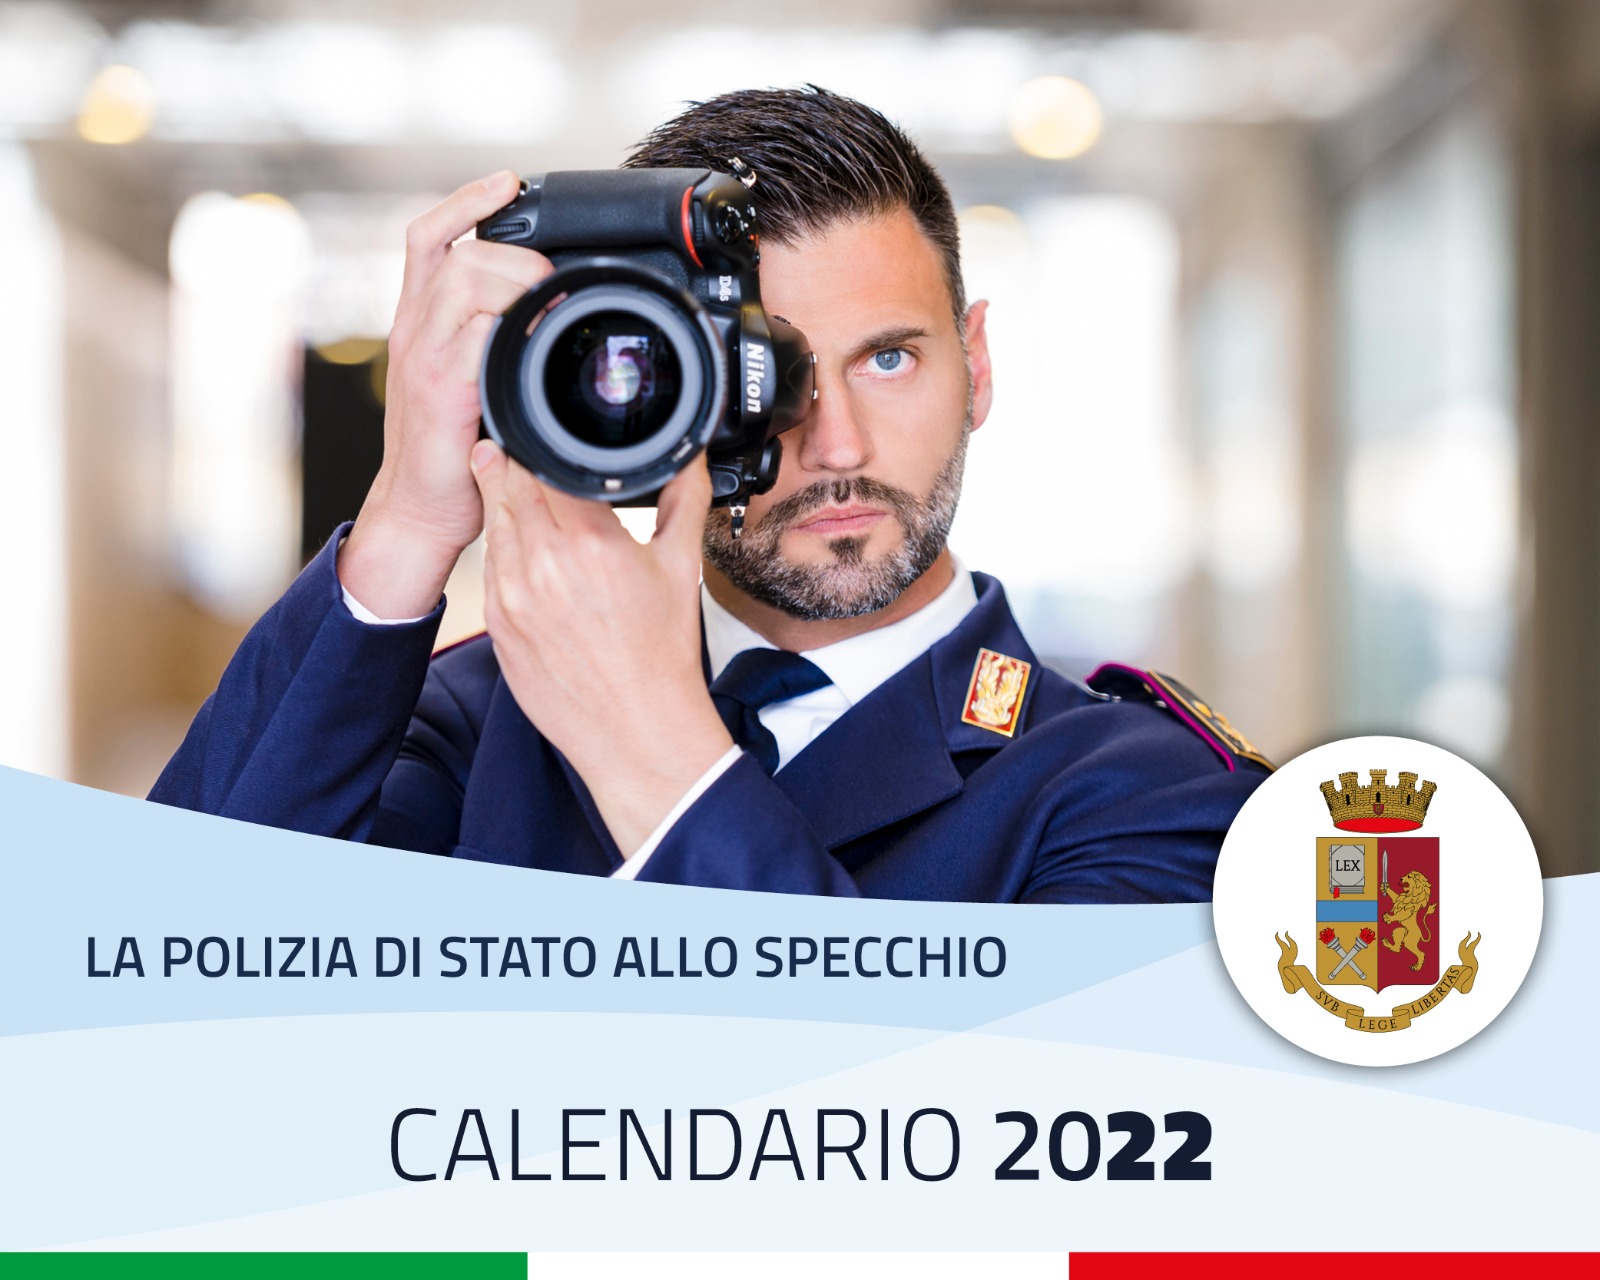 Calendario della Polizia di Stato 2022 – Progetto COVAX